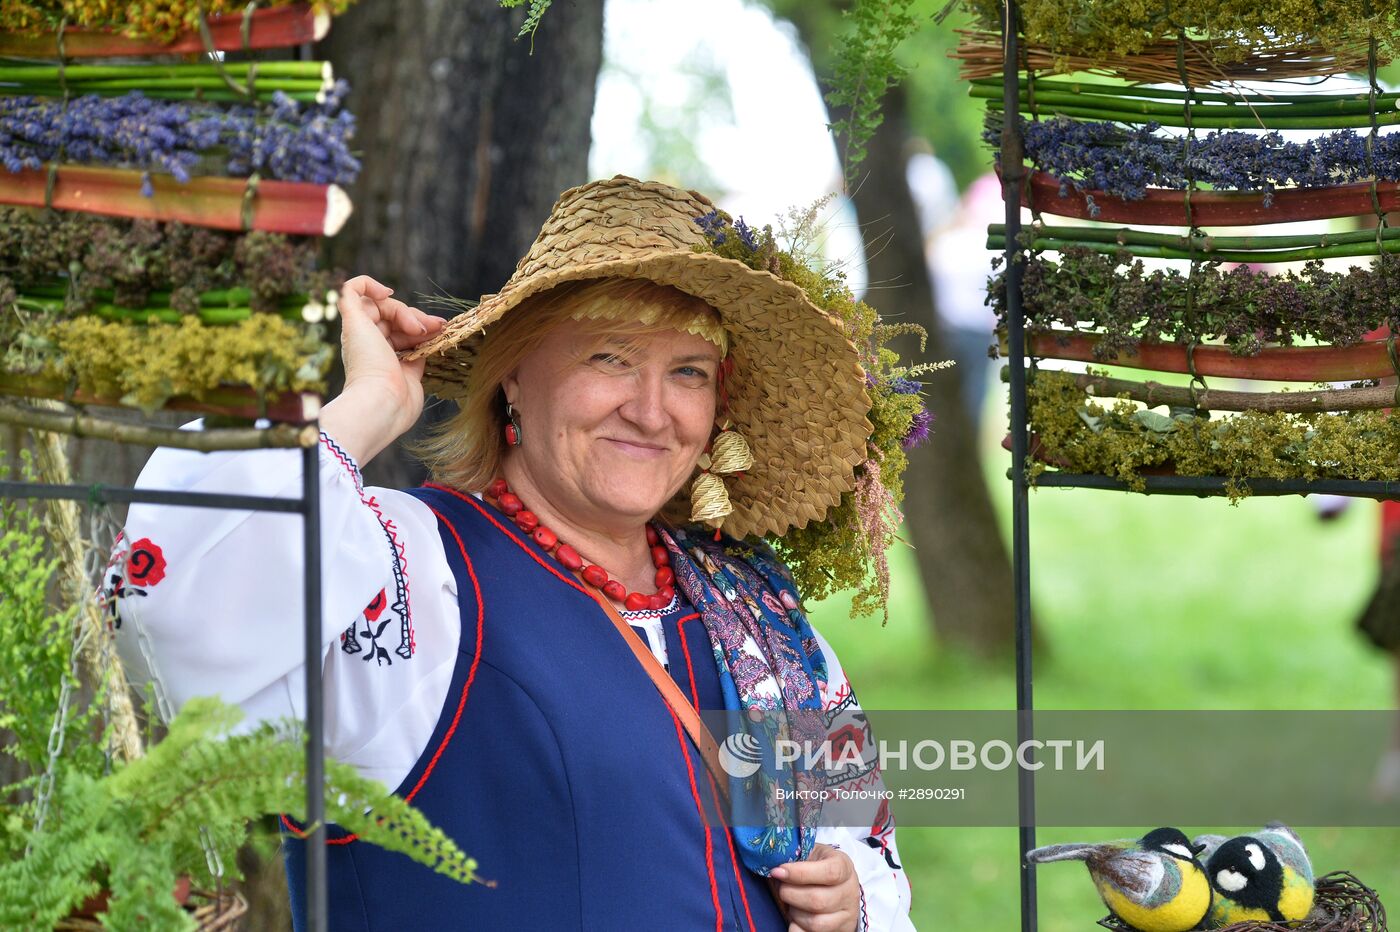 Праздник поэзии, песни и народных ремесел в Белоруссии